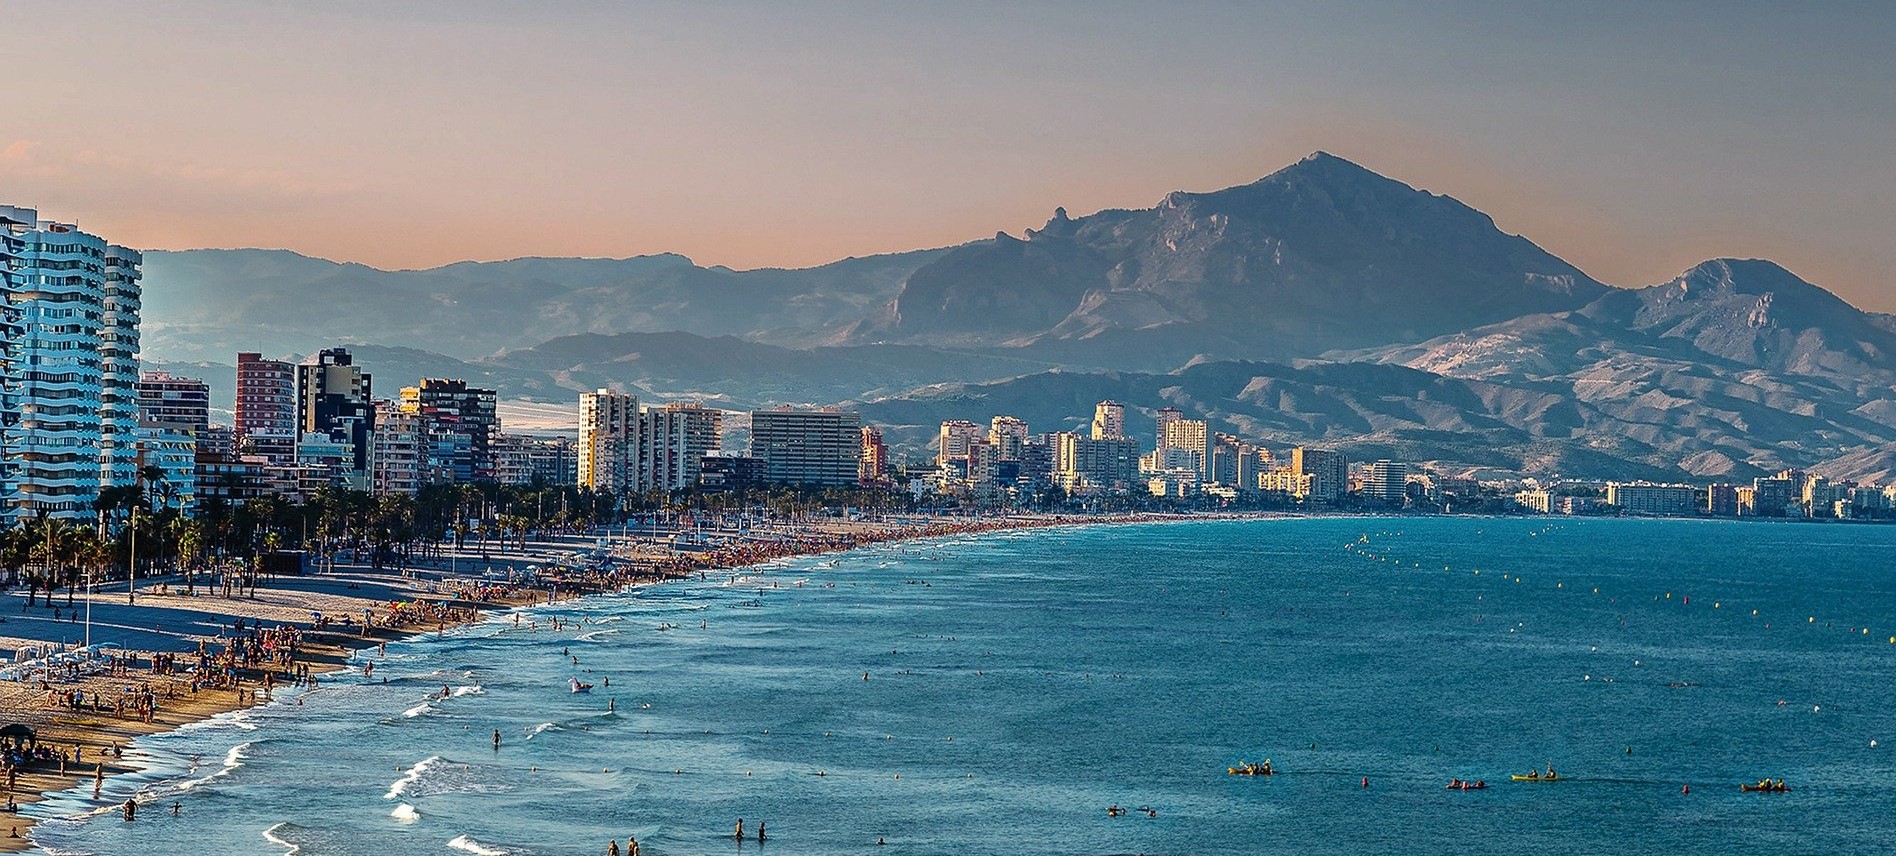 Alloggi in affitto ad Alicante: appartamenti e camere per studenti